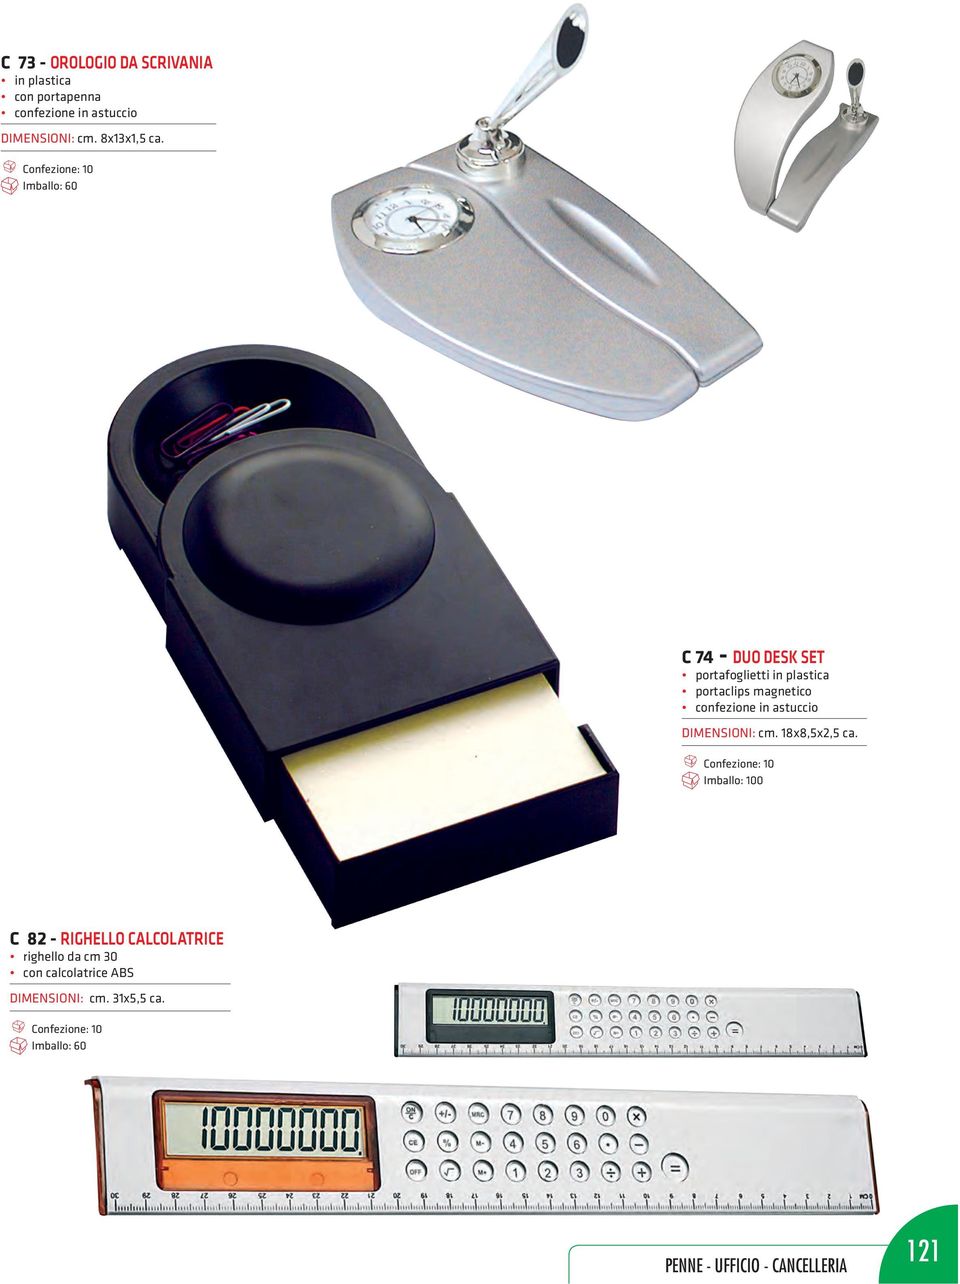 Confezione: 10 Imballo: 60 C 74 - duo desk set portafoglietti in plastica portaclips magnetico